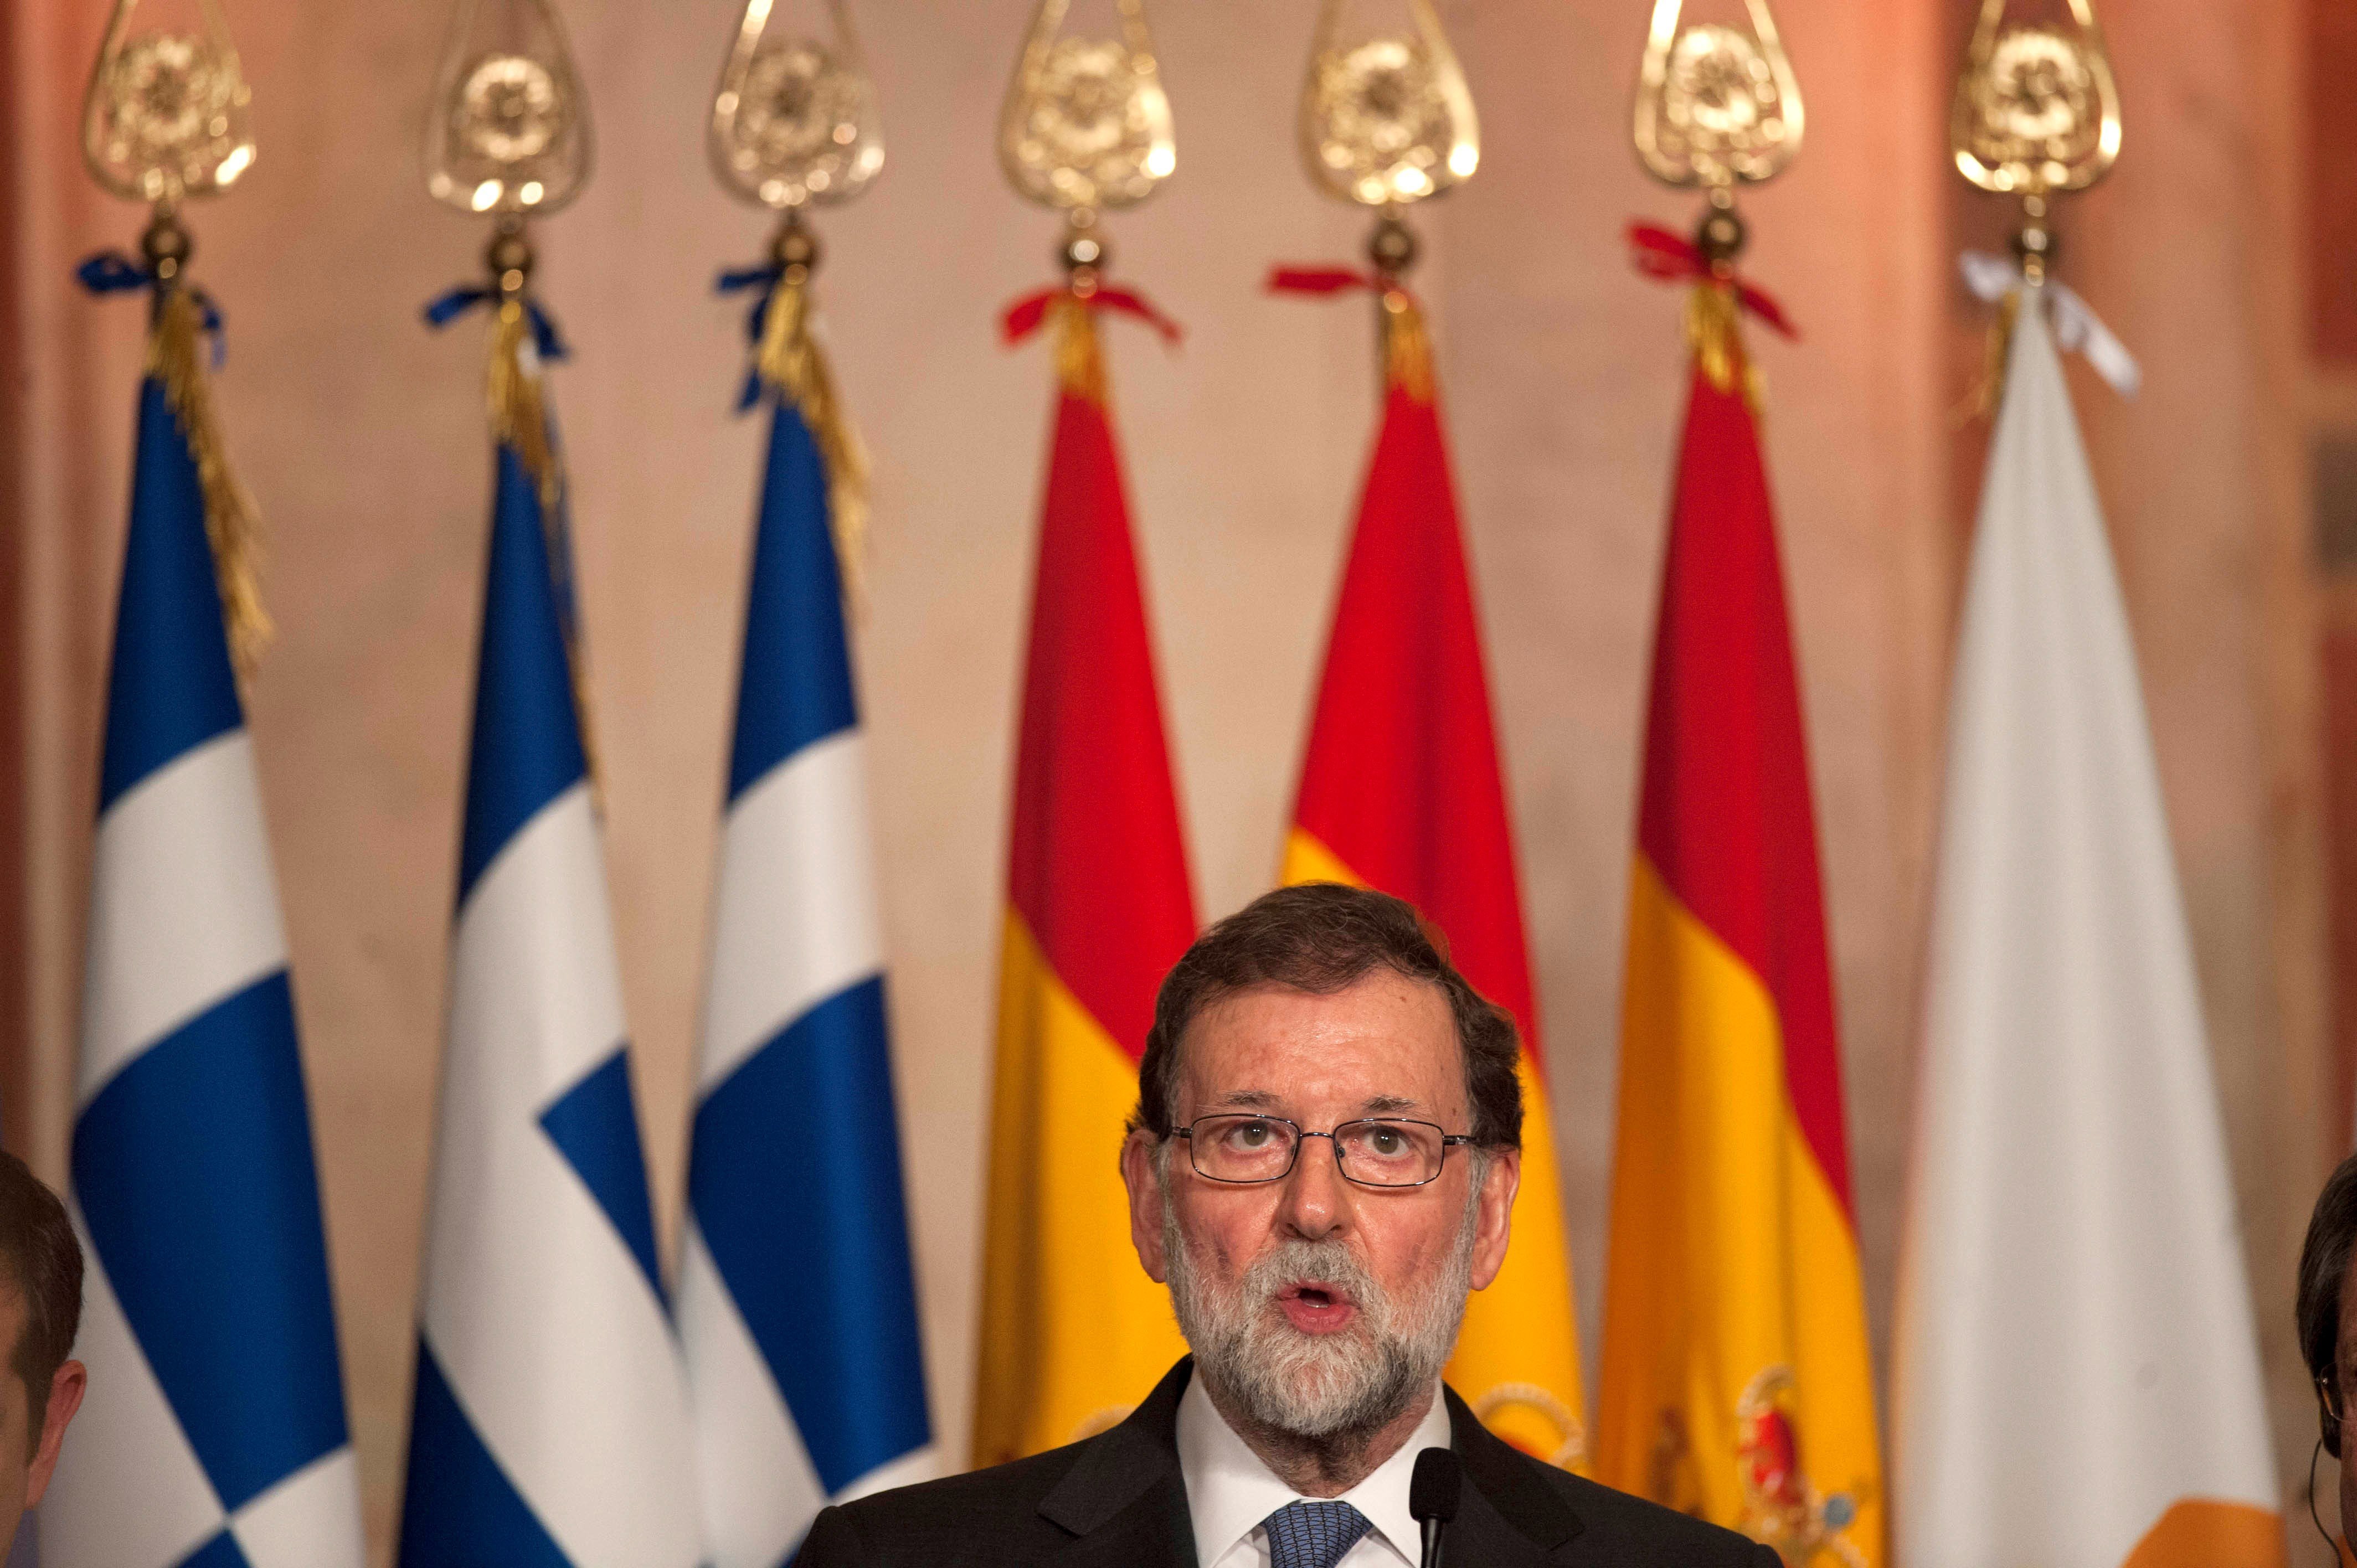 Rajoy pierde apoyo entre las élites españolas, diagnostica Bloomberg